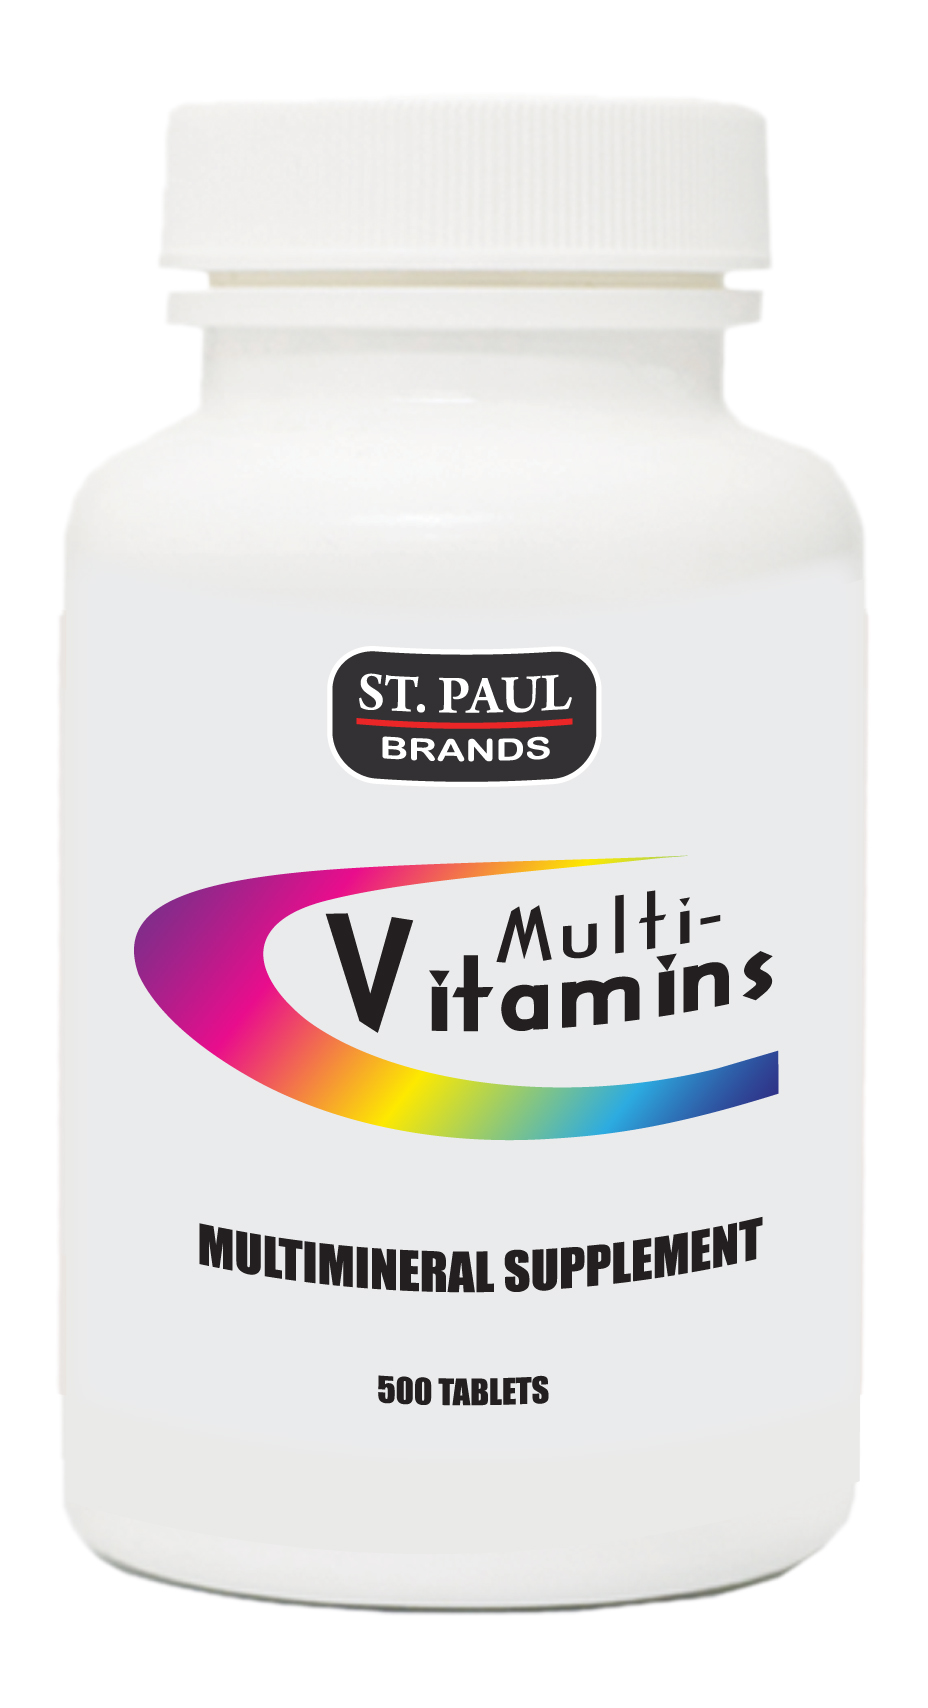 Multi-Vitamins Supplement